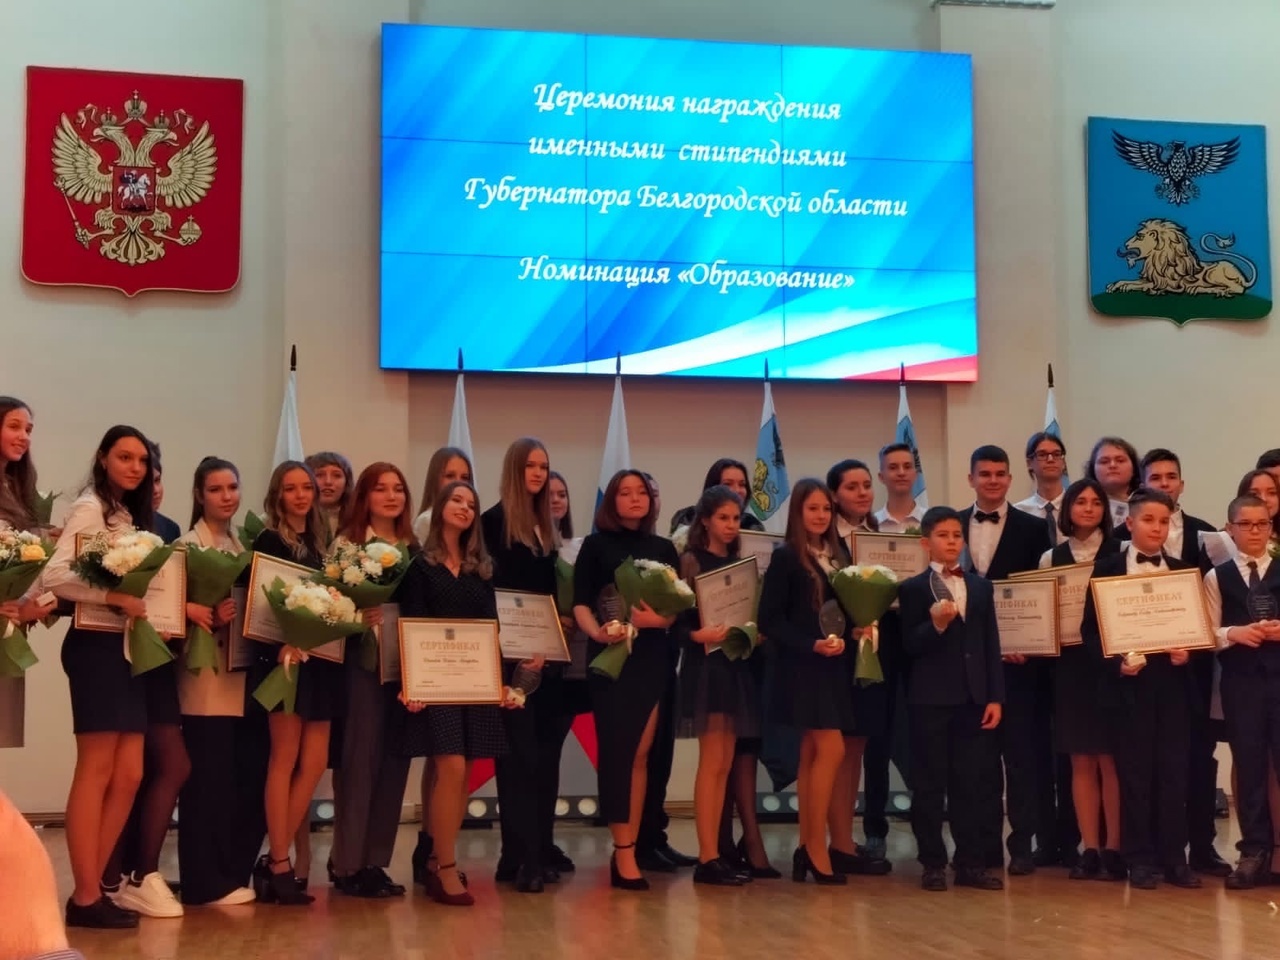 Трое школьников нашего района стали обладателями именной стипендии Губернатора Белгородской области в номинации «Образование»